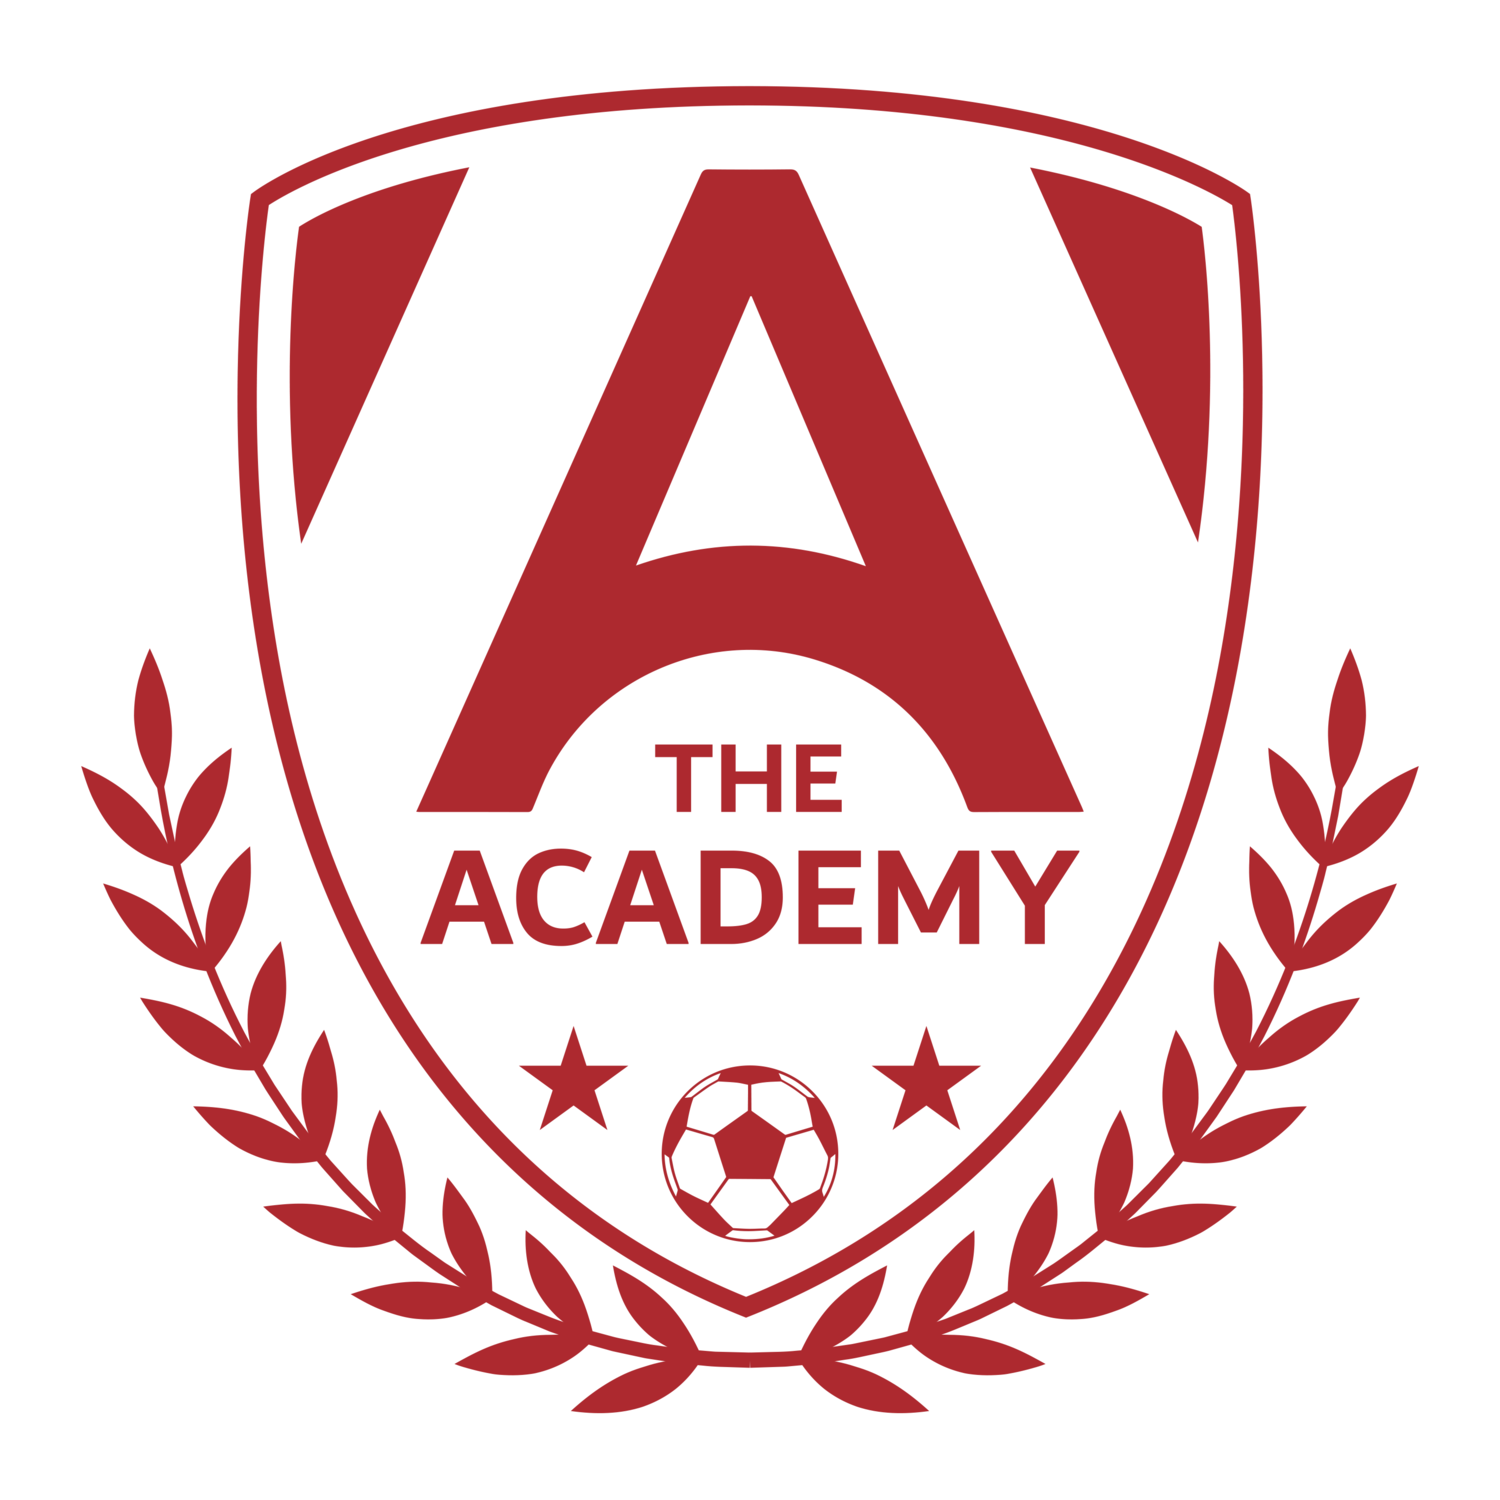 The A Academy